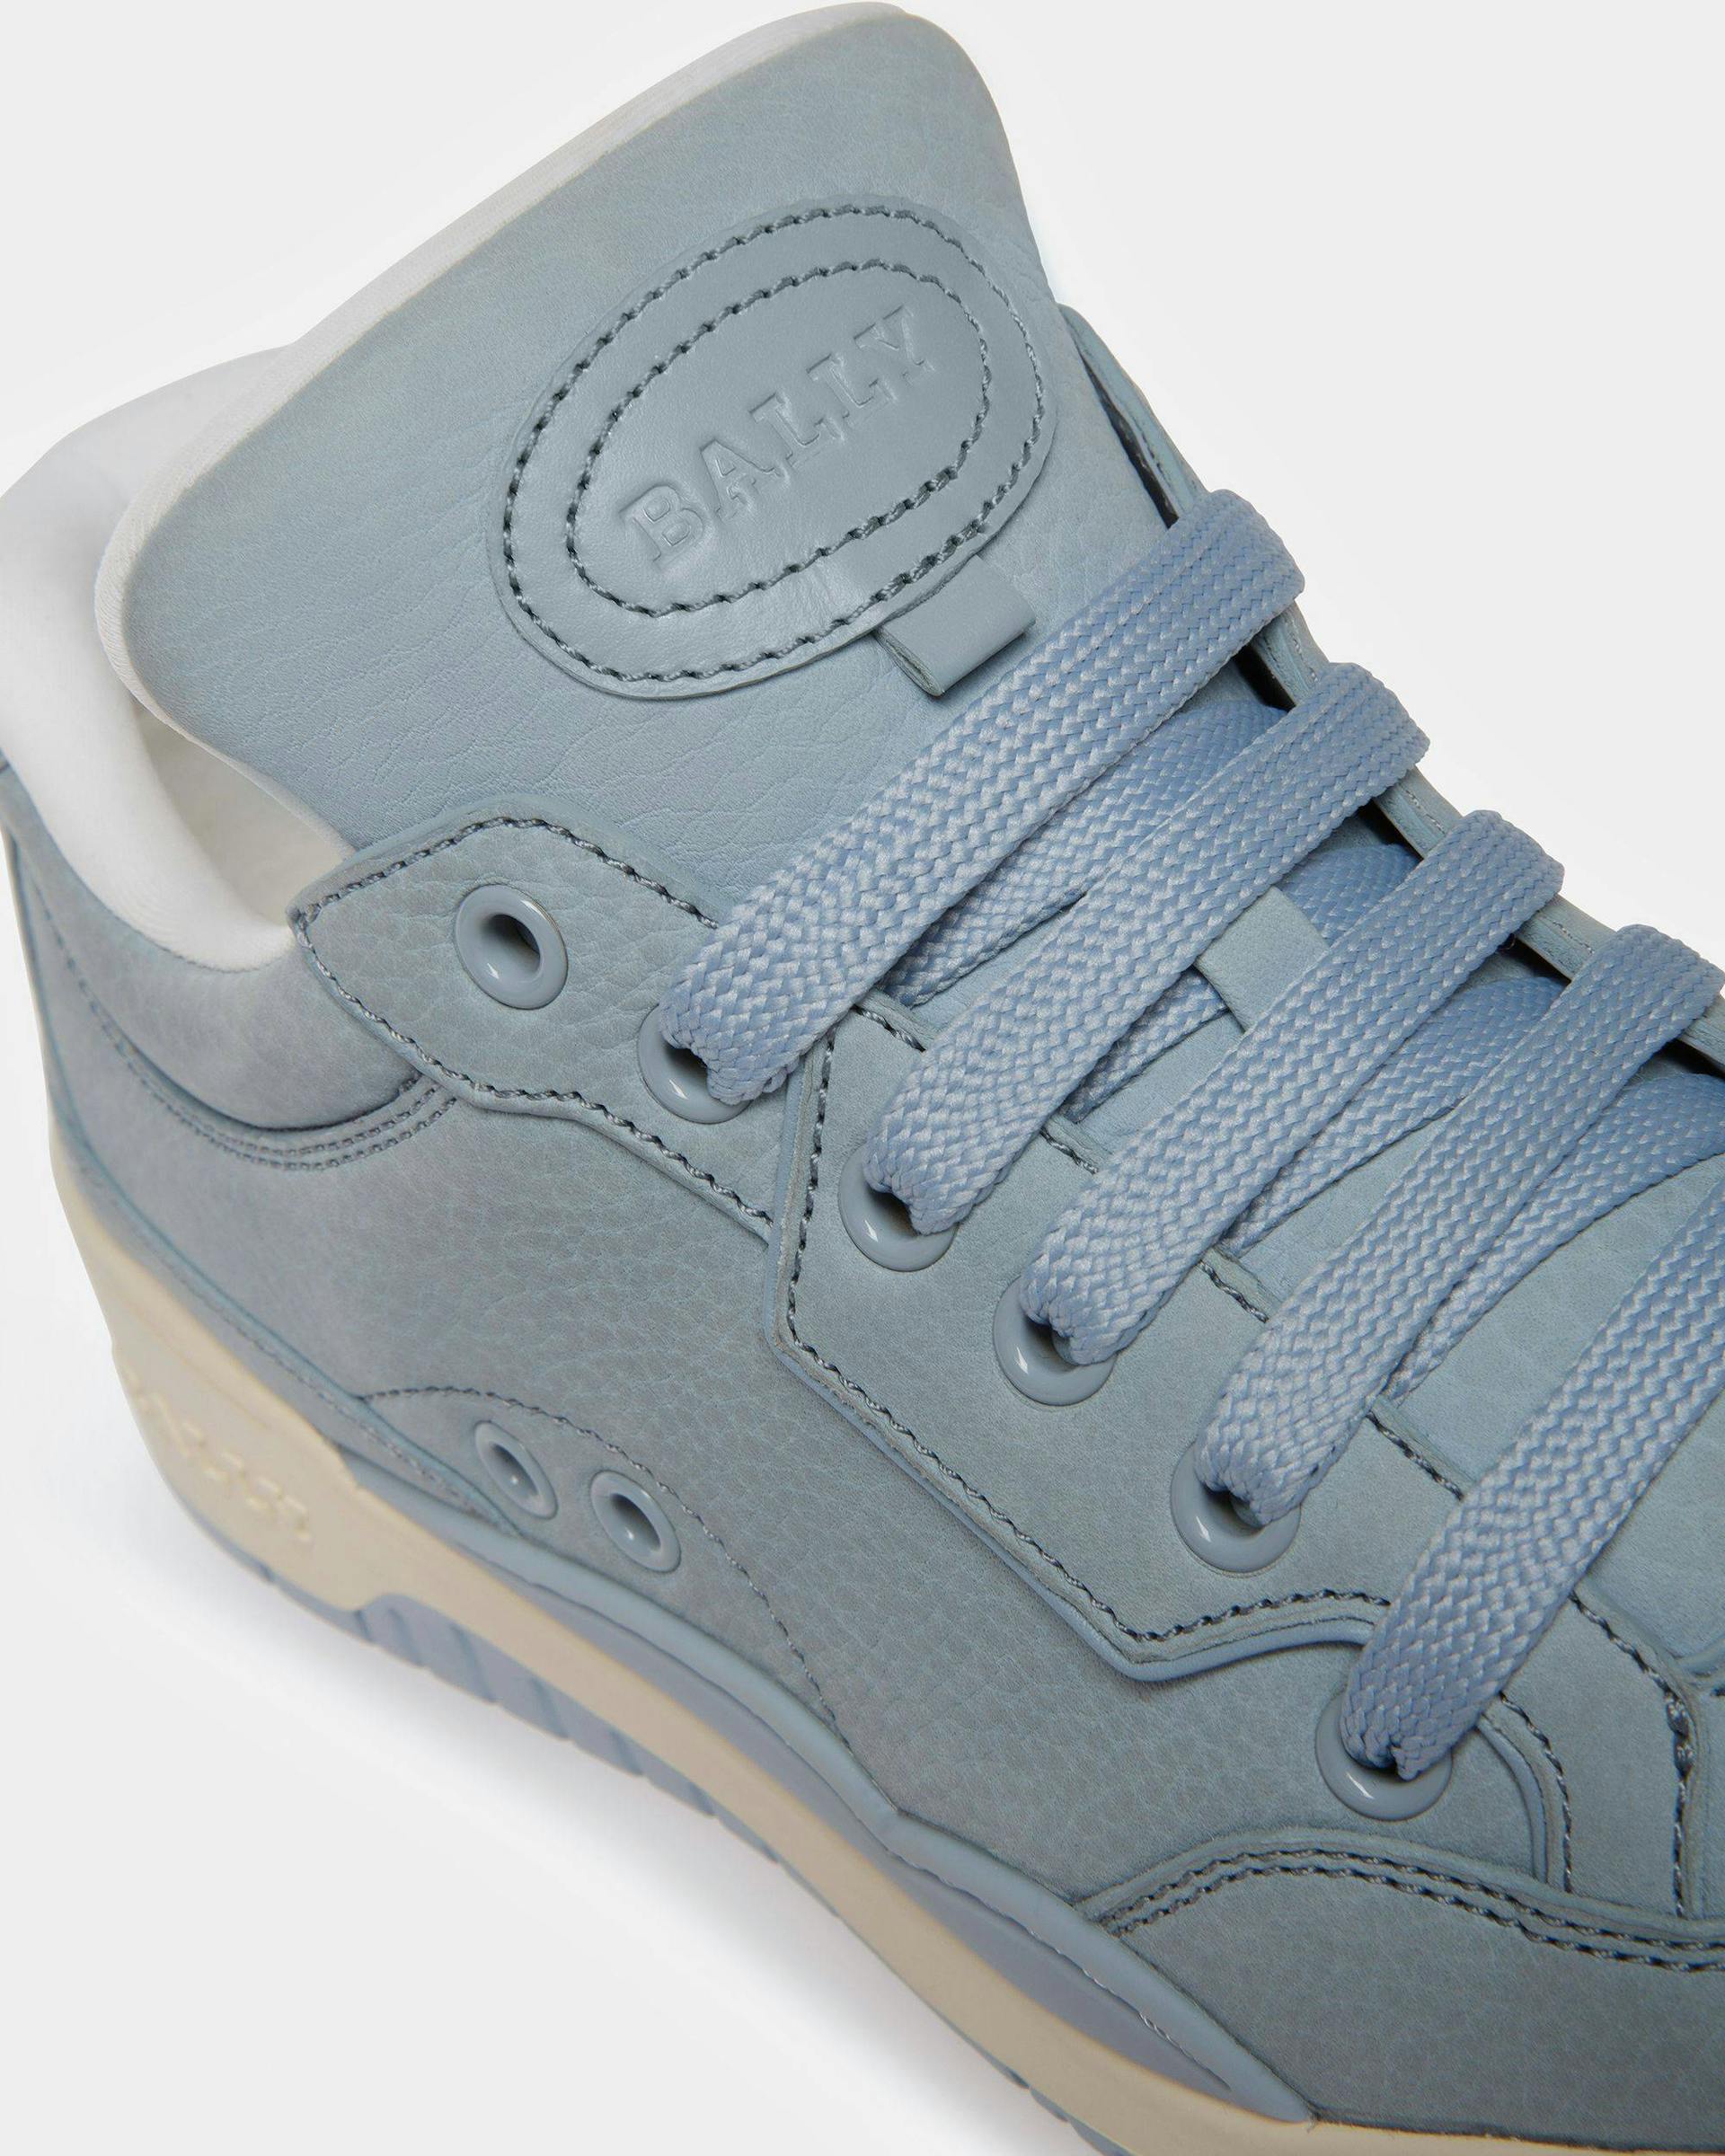 Kiro Leather Sneakers In Light Blue - Women's - Bally - 06